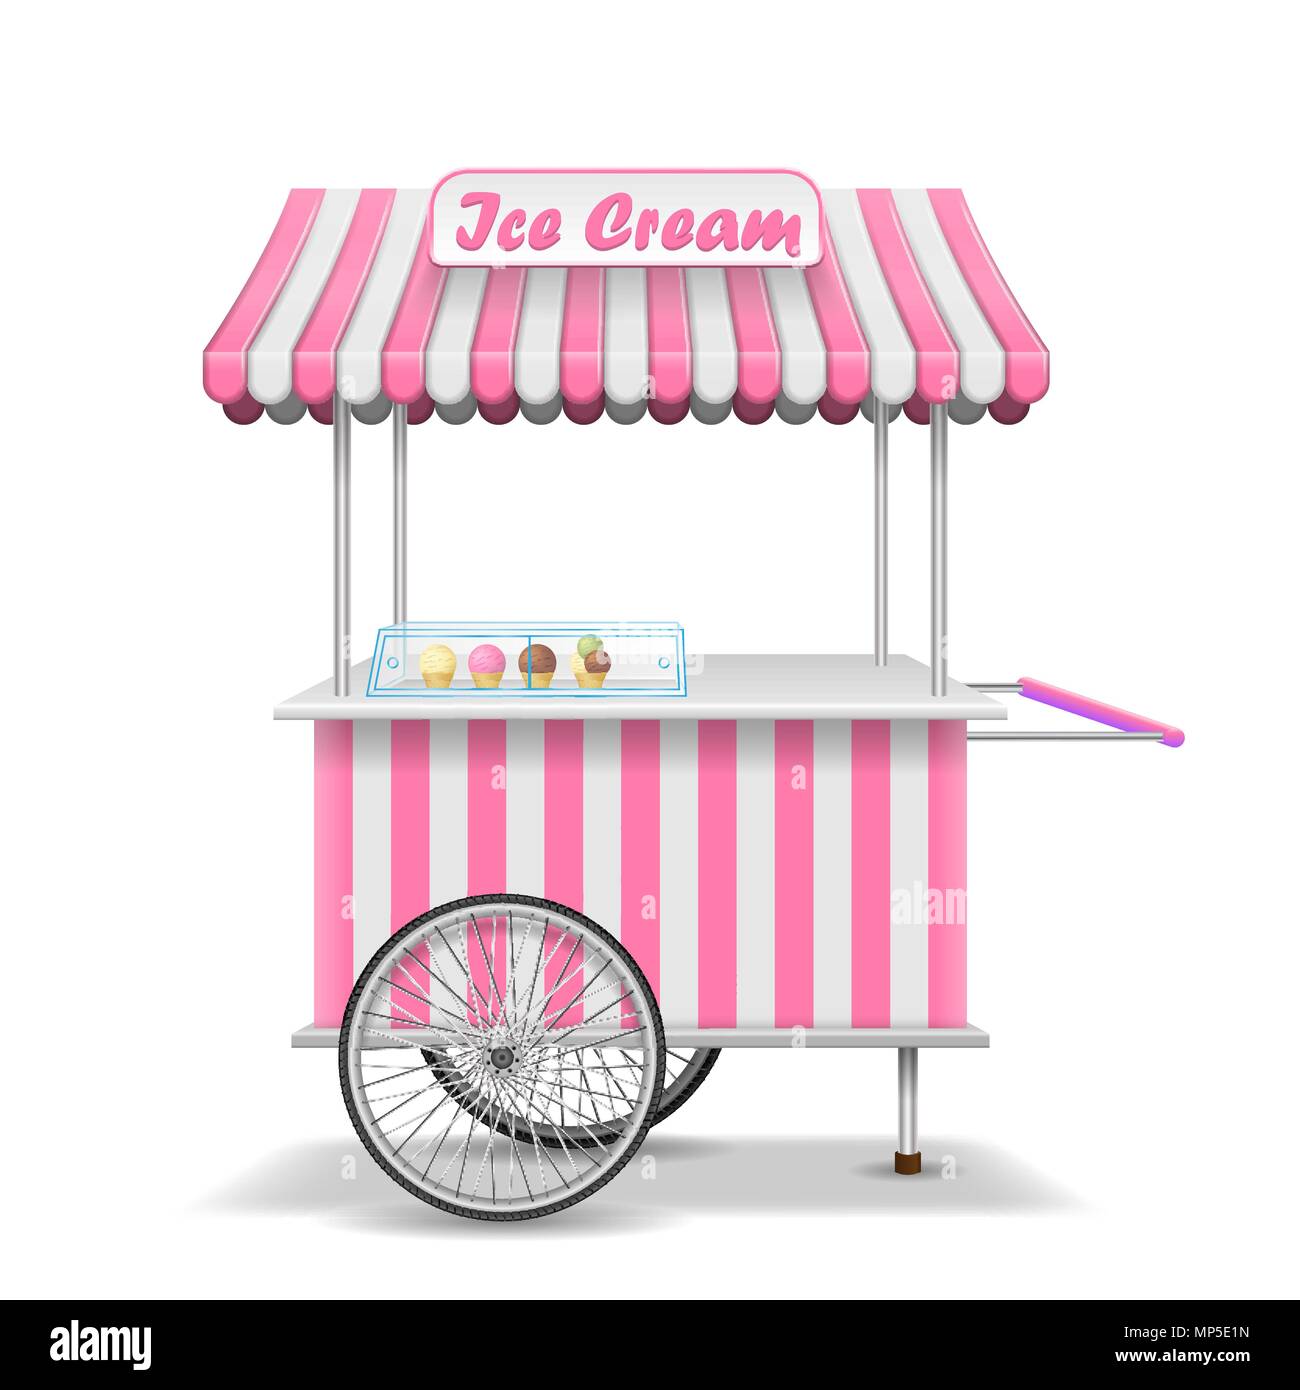 Realistico il cibo di strada carrello con ruote. Rosa Mobile ice cream mercato modello di stallo. Gelato store kiosk mockup. Illustrazione Vettoriale Illustrazione Vettoriale